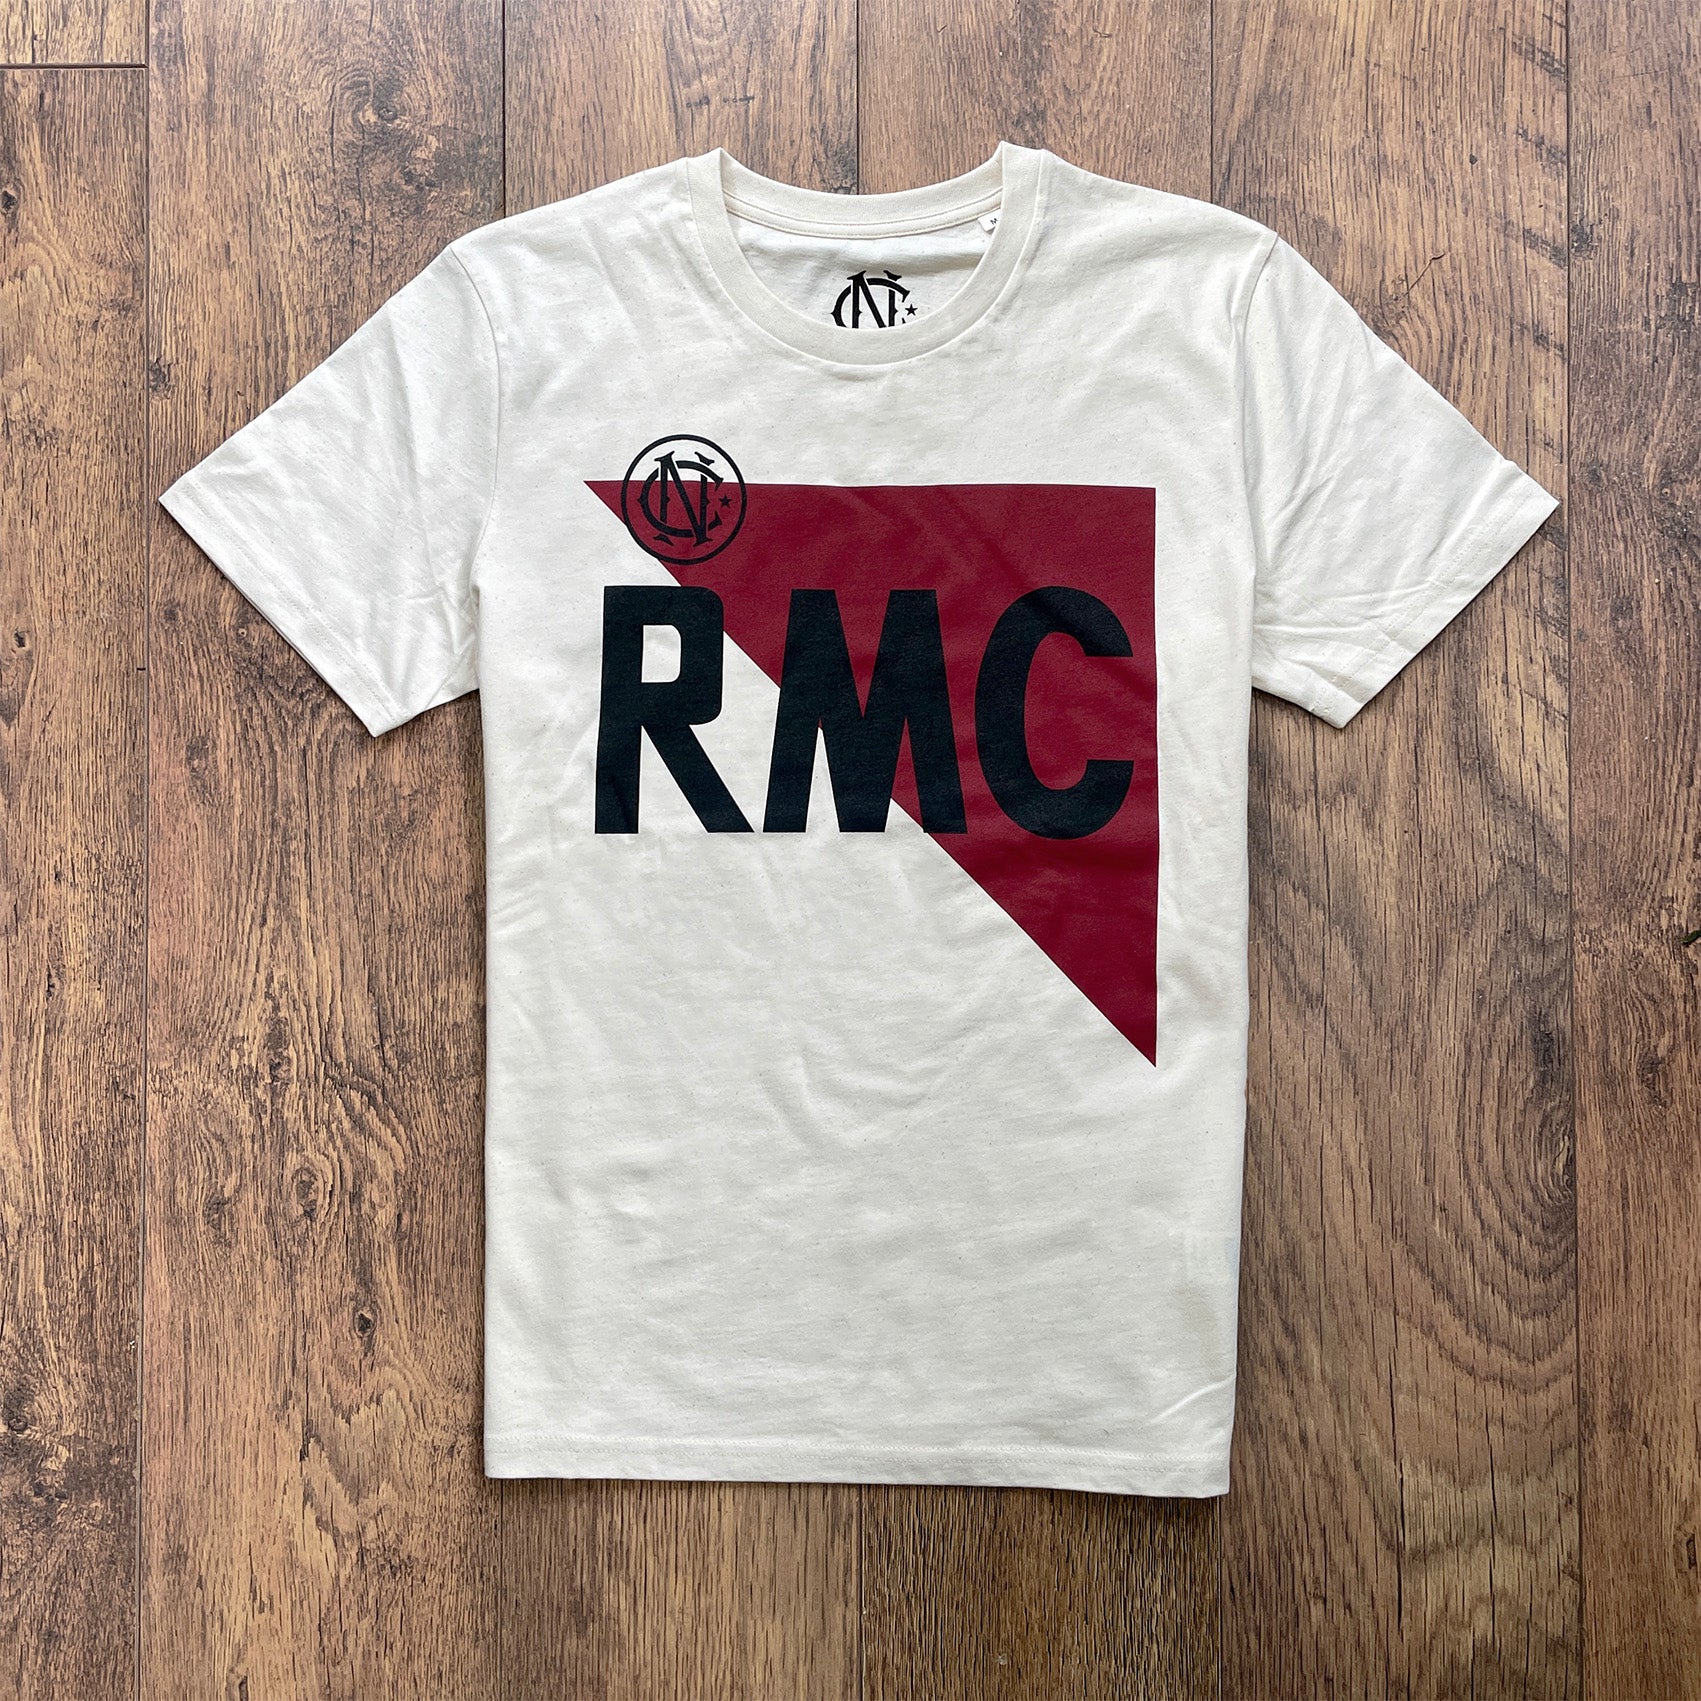 Monaco 1982 T-shirt